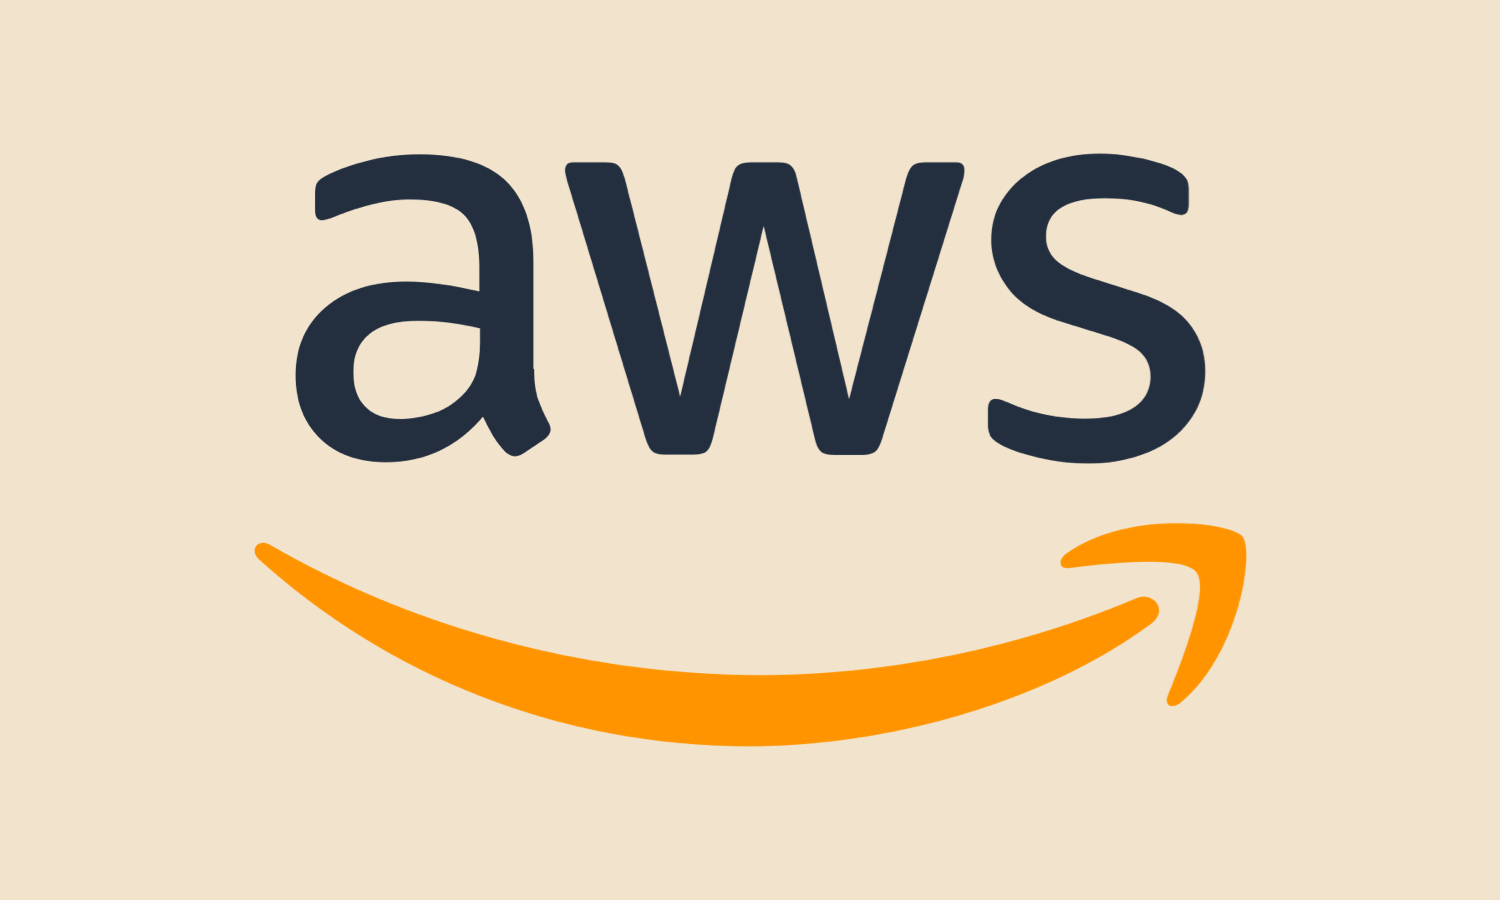 Otra caída grave de Amazon AWS. Y van varias veces en un mes y ahora con un apagón